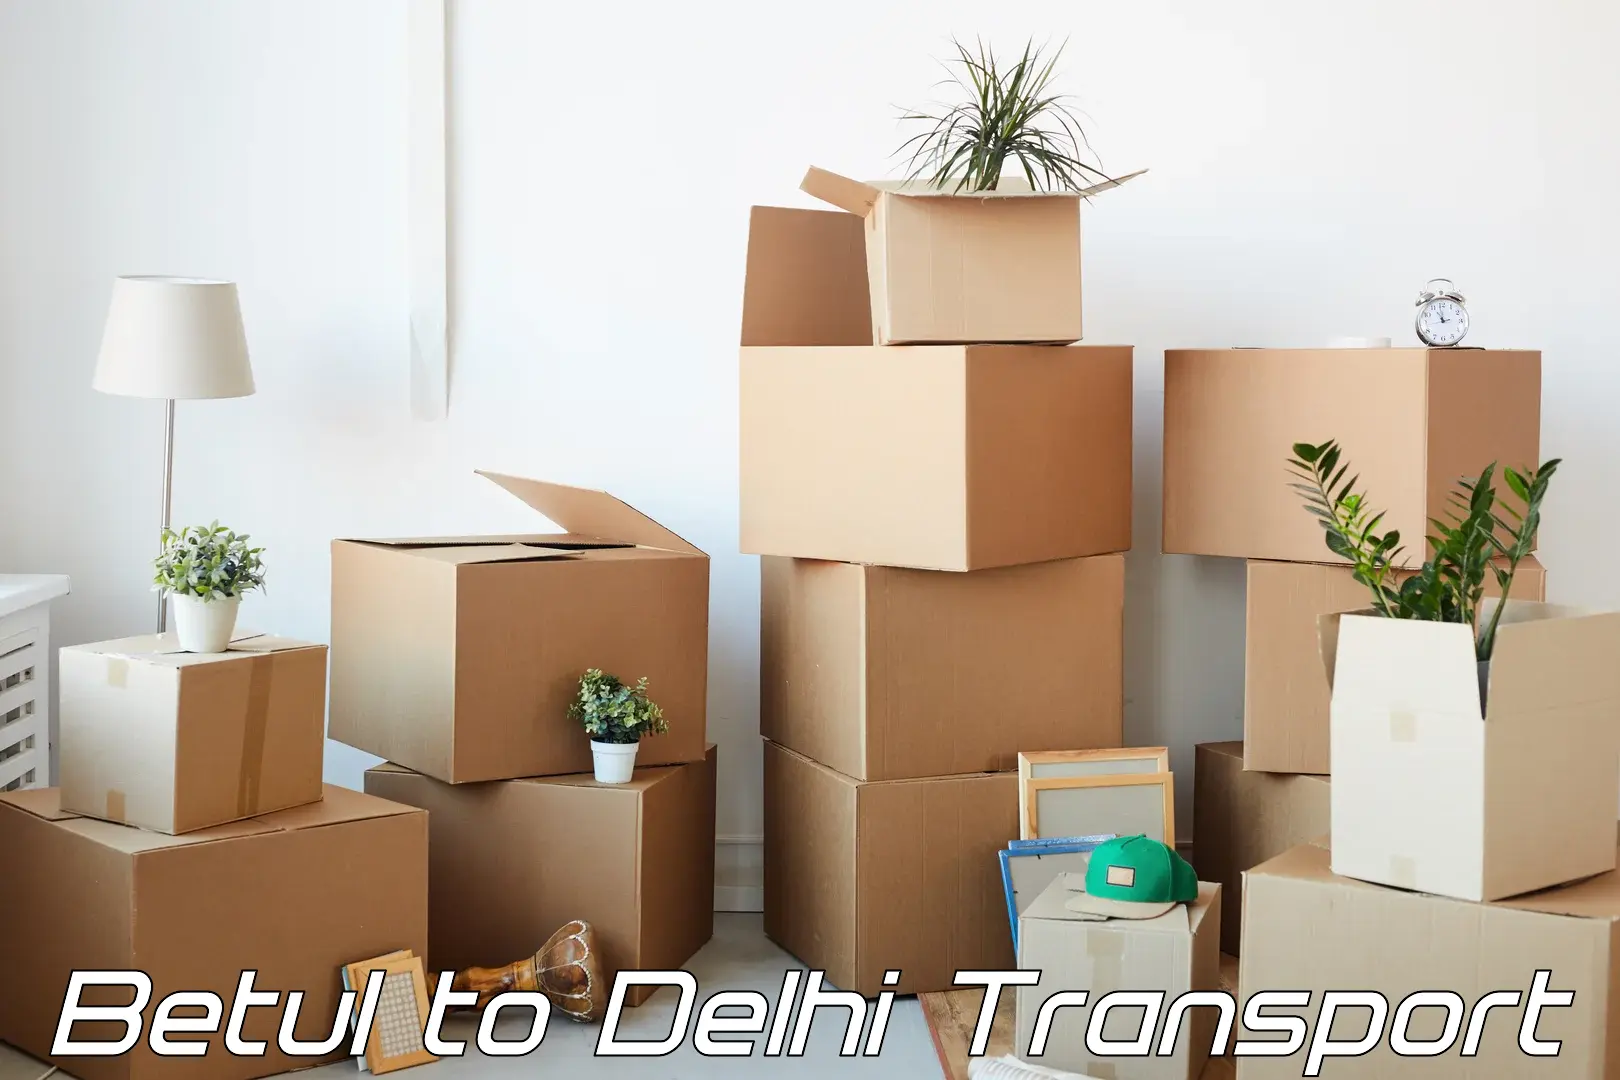 International cargo transportation services Betul to Delhi